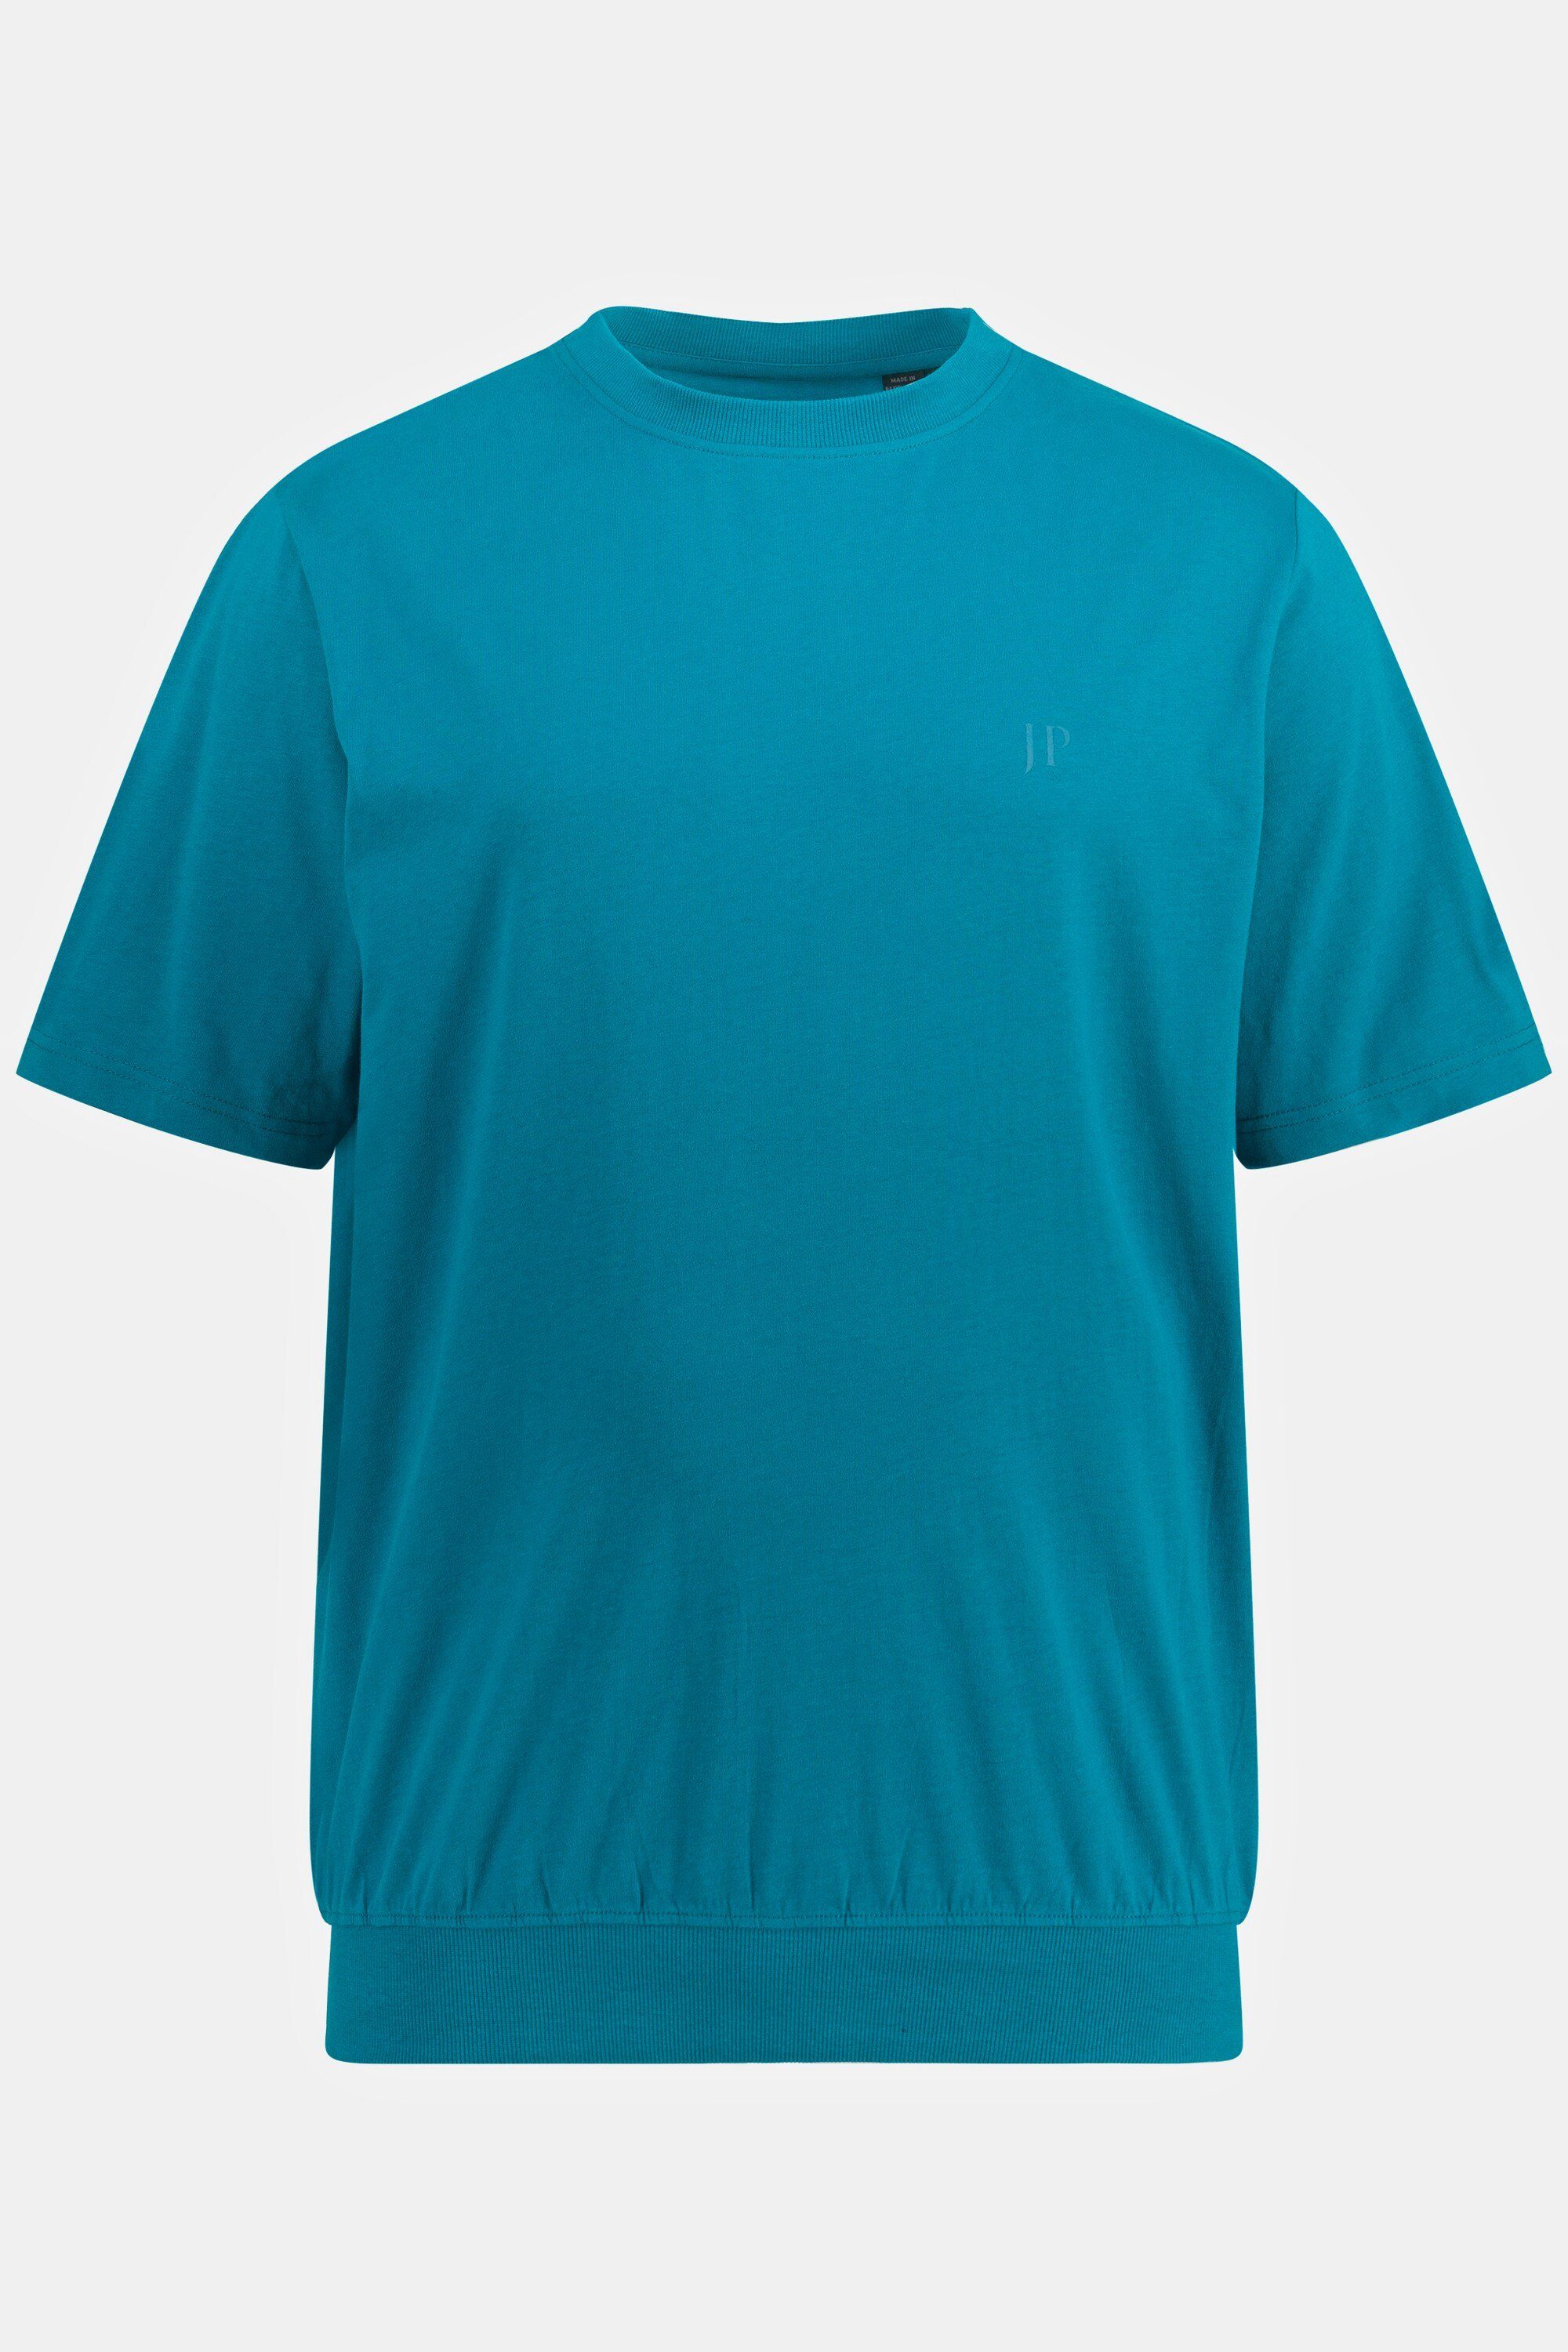 JP1880 T-Shirt 10XL ozeanblau bis T-Shirt Bauchfit Halbarm XXL Basic